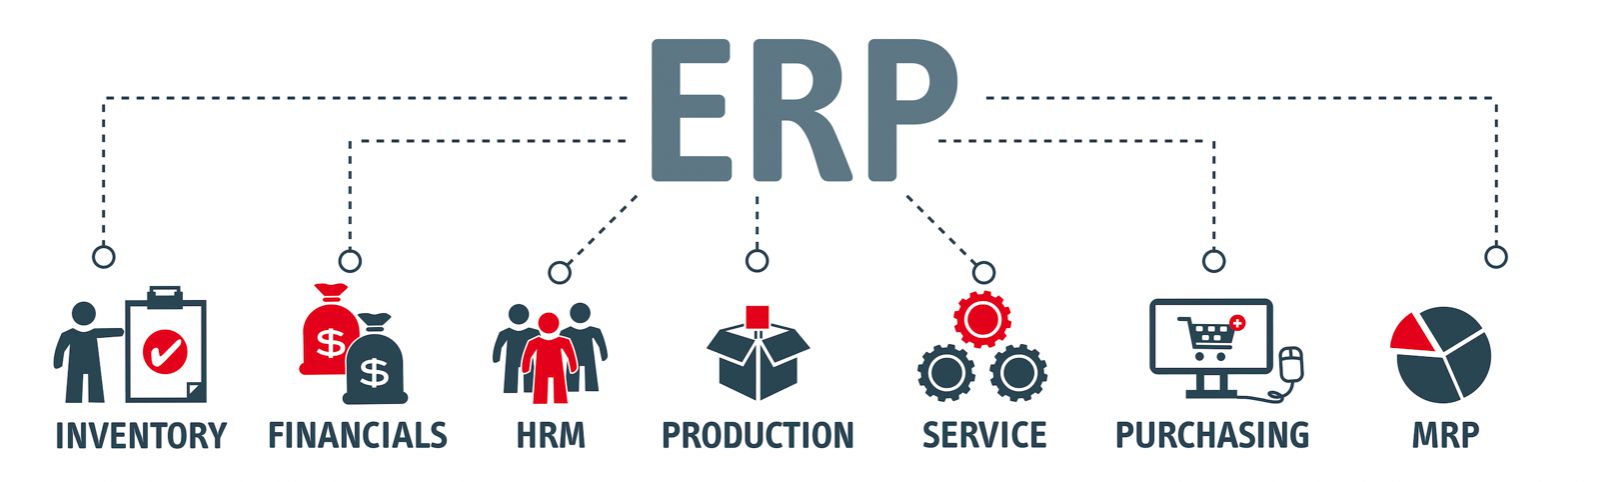 Enterprise Resource Planning , ERP abbreviation